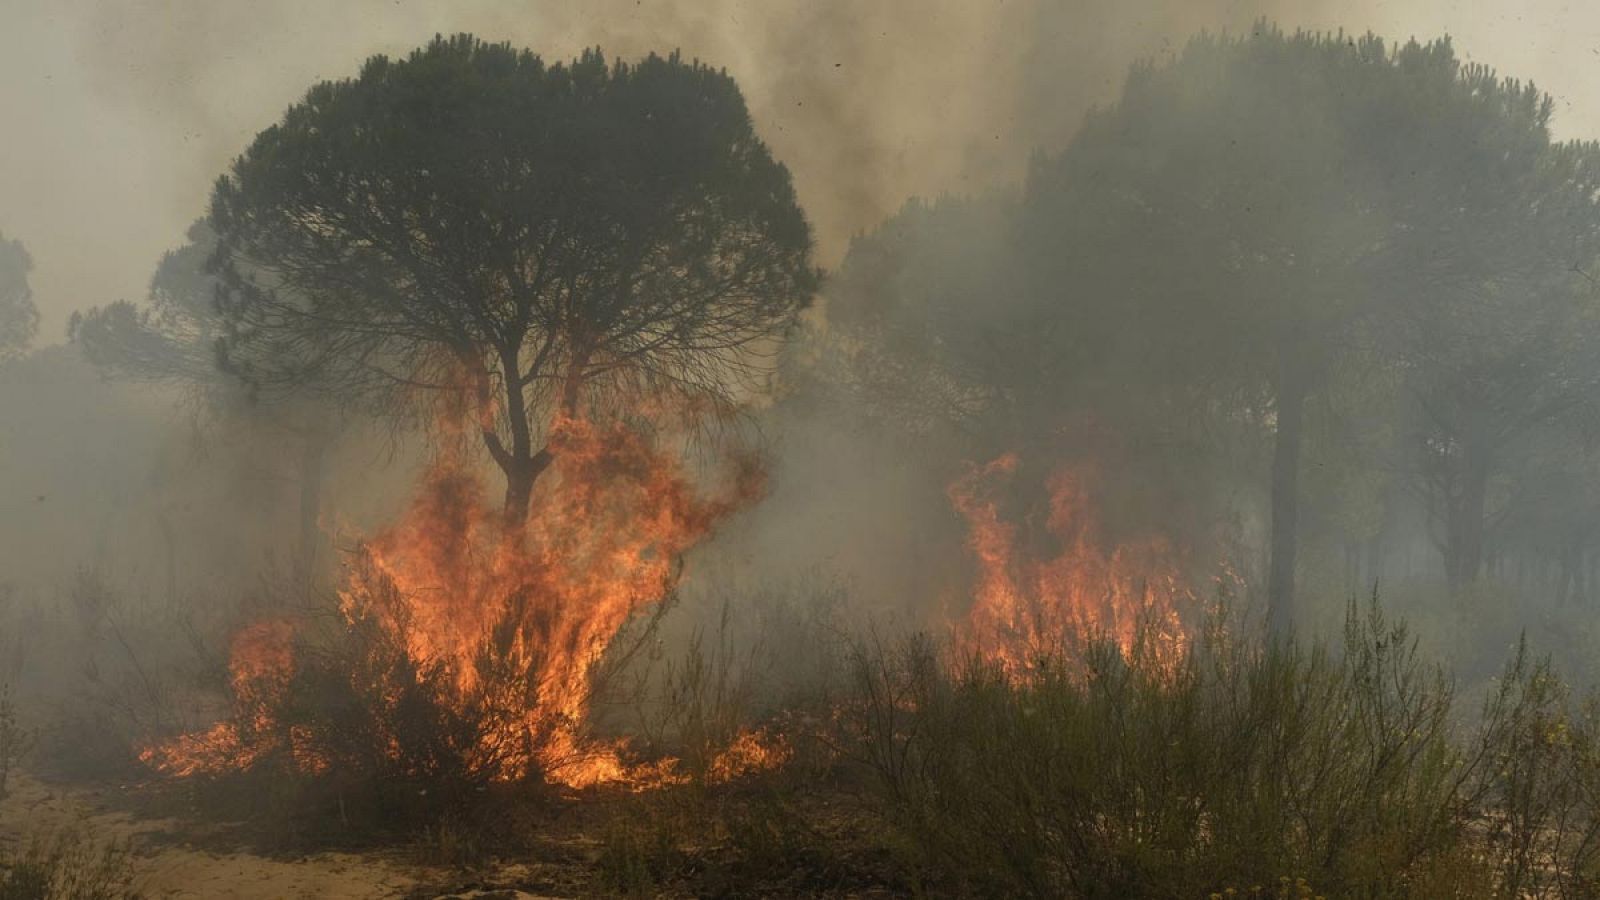 En 2016 se produjeron en España 22 grandes incendios forestales (GIF), con una media de 1.800 hectáreas cada uno.